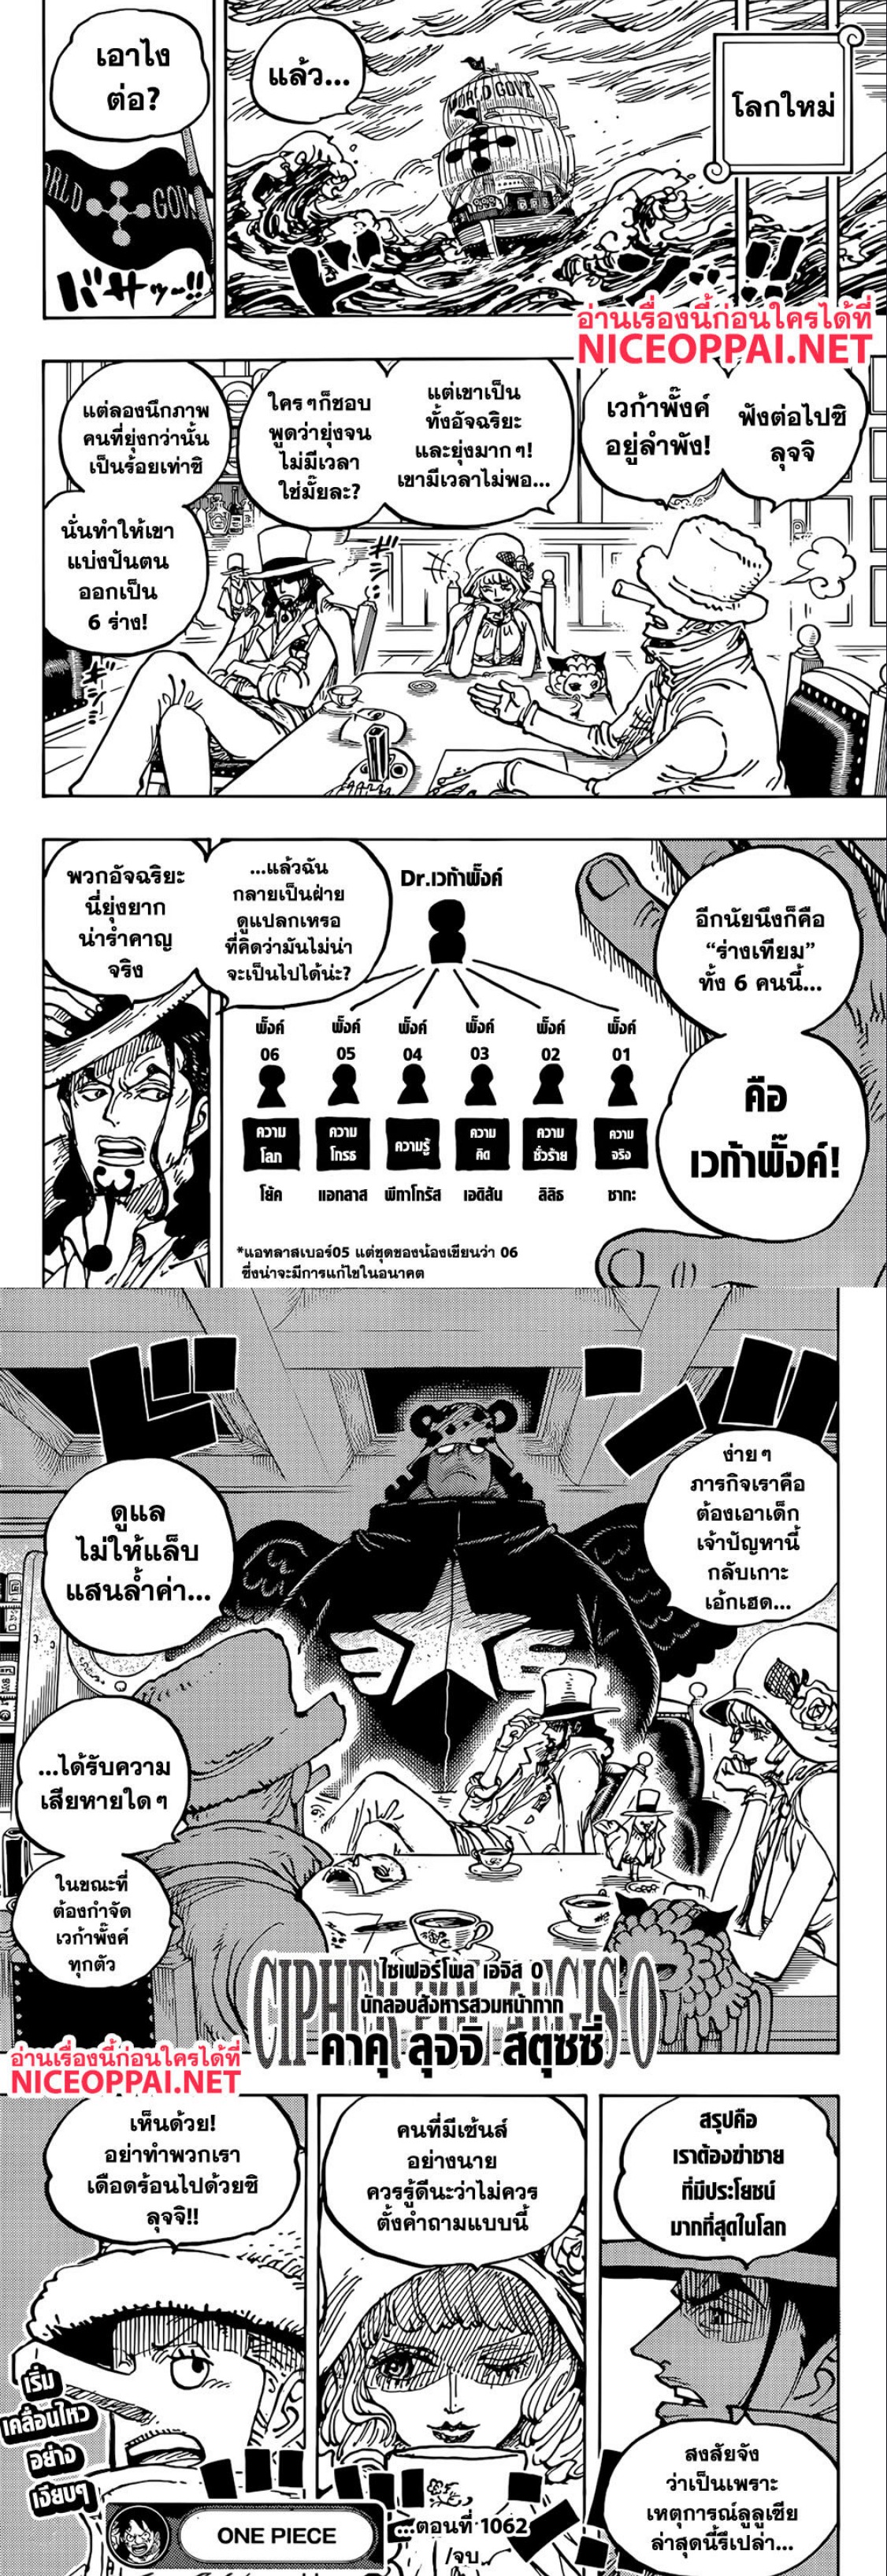 One Piece6